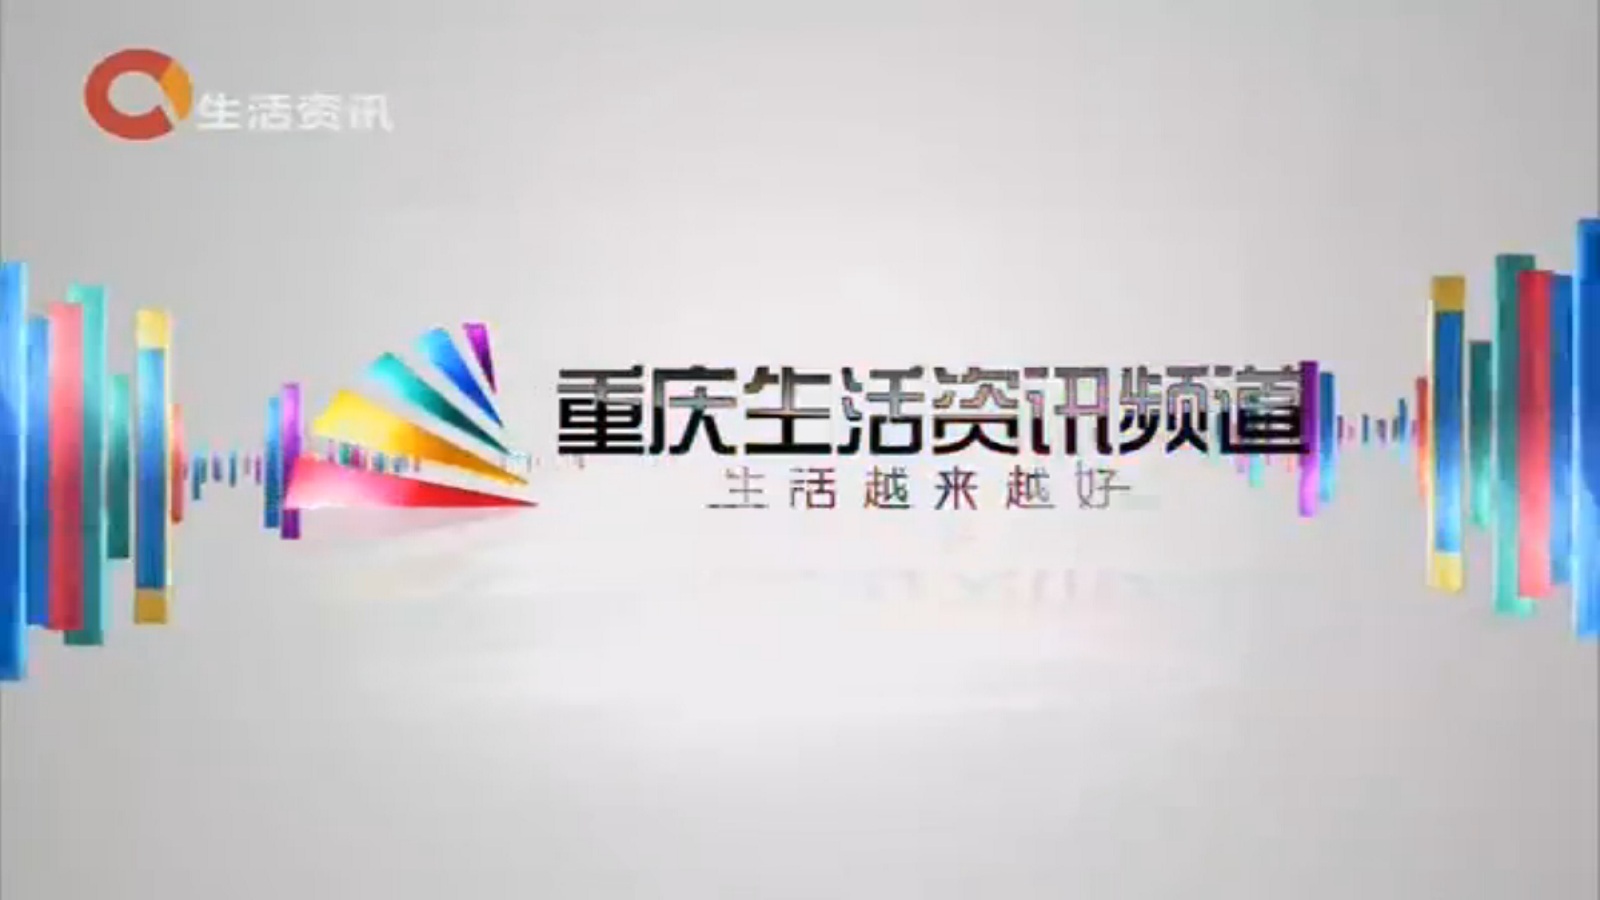 重慶廣播電視集團(重慶電視台)